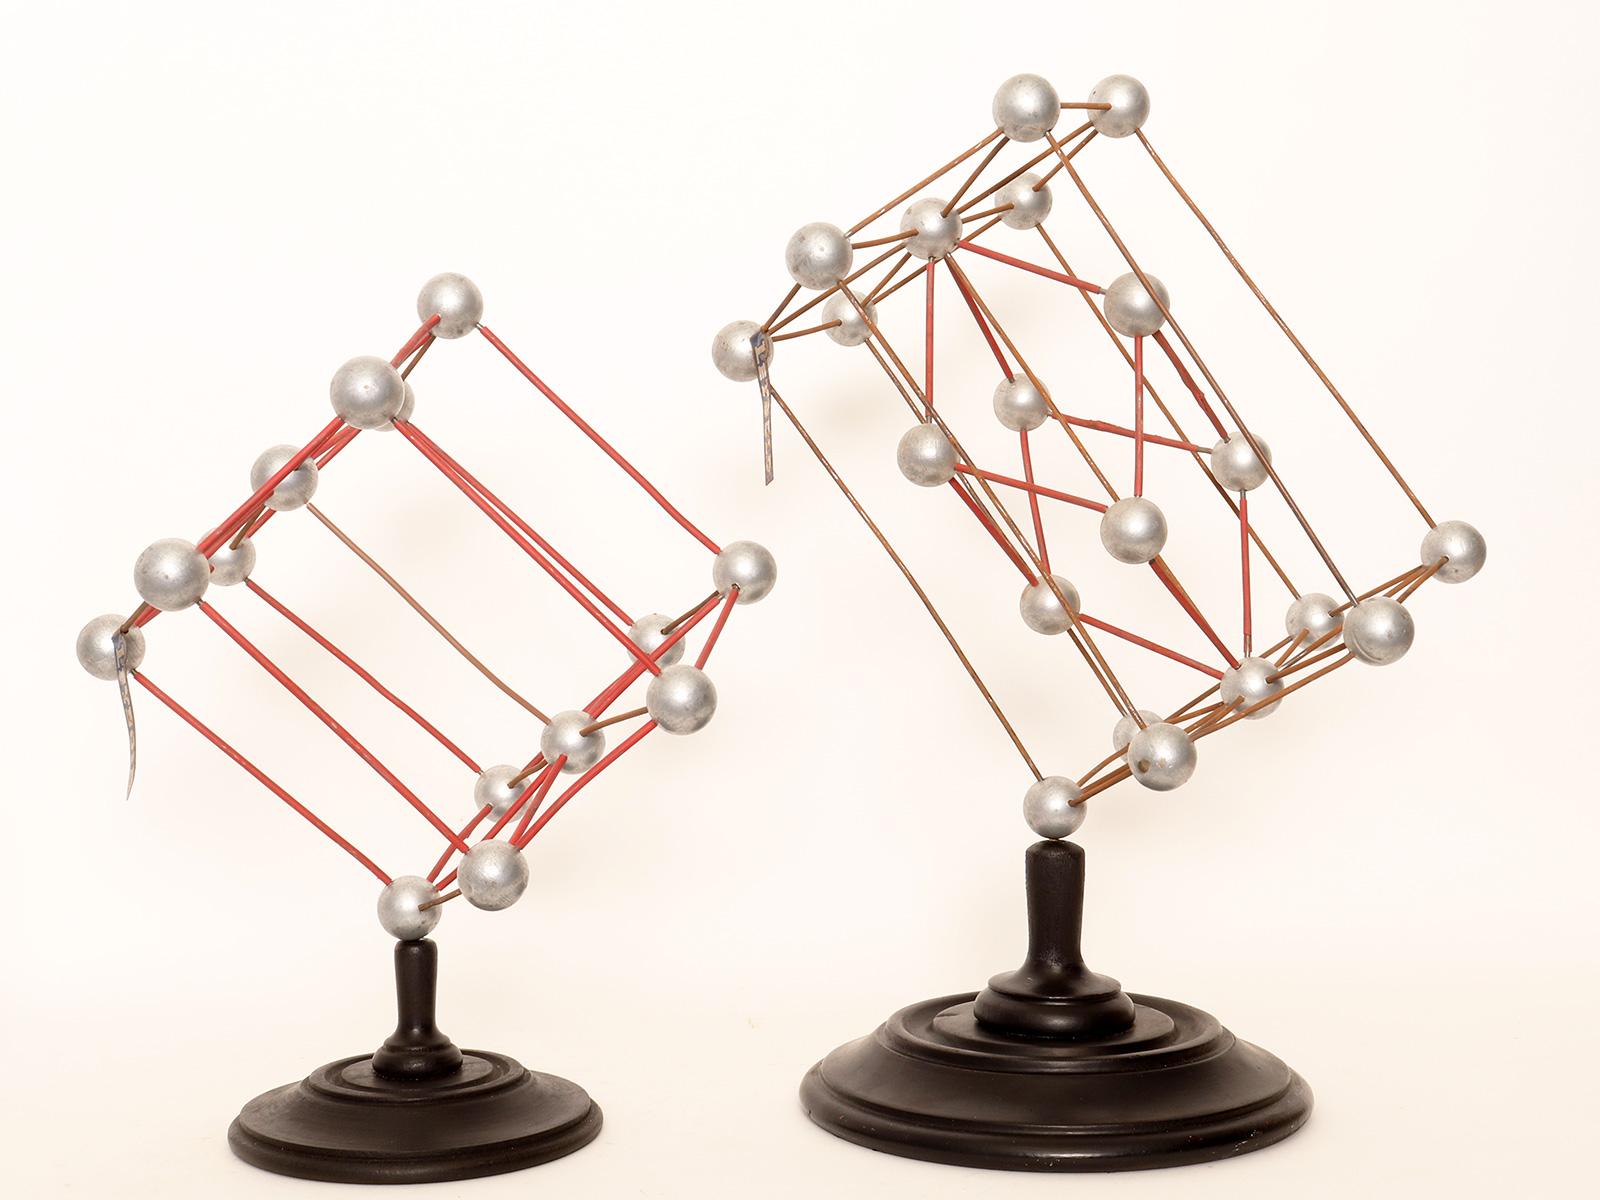 Paire de modèles de structure atomique moléculaire pour la didactique de la chimie. Les sphères sont faites de bois peint et représentent des atomes et une molécule. Les bases sont en bois fruitier tourné et ébonisé. Leybold, Allemagne, années 1940.